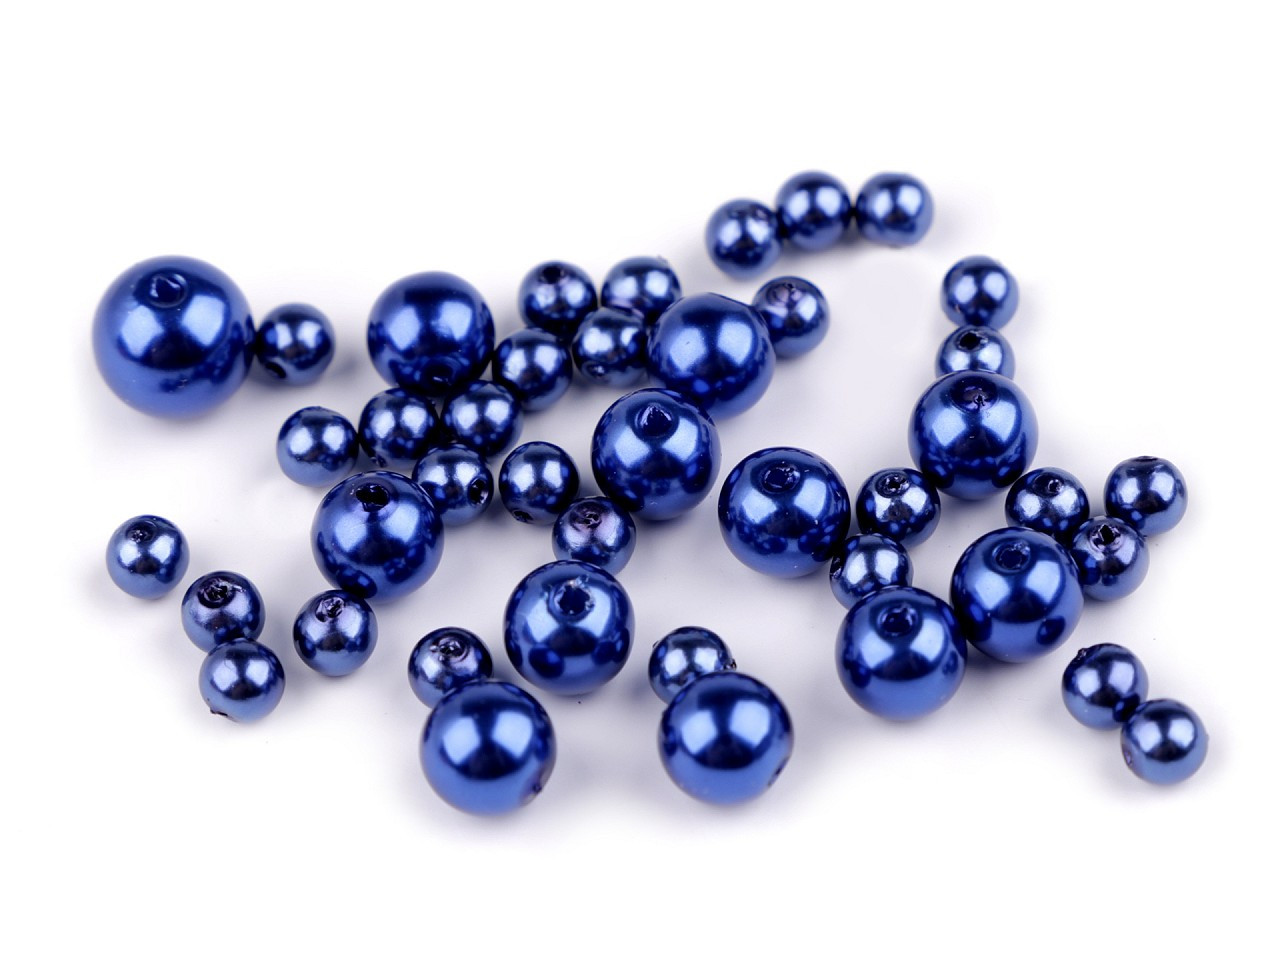 Plastové voskové korálky / perly Glance mix velikostí, barva F59 modrá berlínská